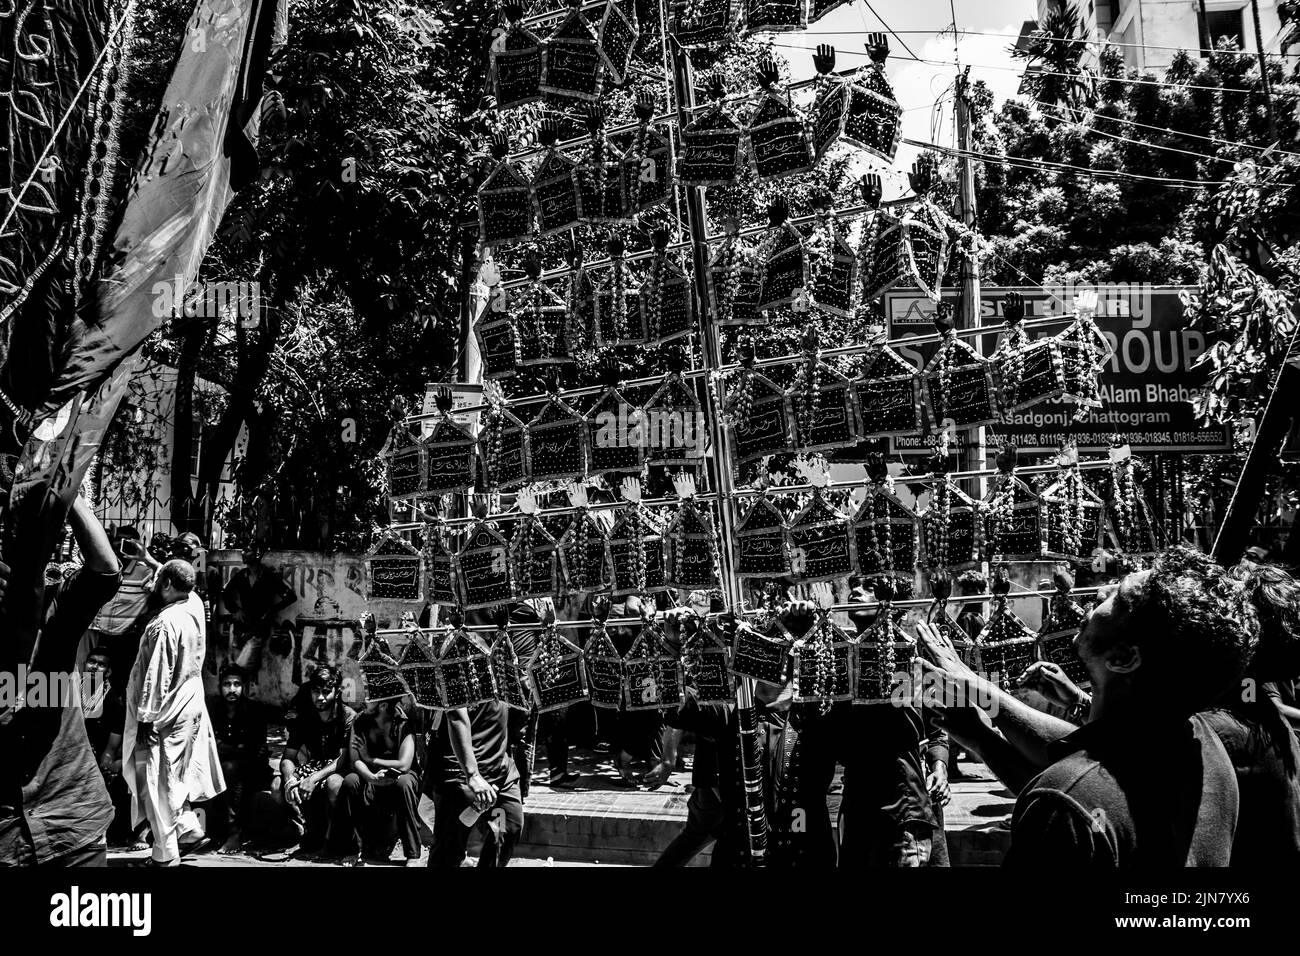 Bangladesch. 9. August 2022. Schiitische Muslime aus Bangladesch marschieren und tragen die Flaggen und Tazia während einer Muharram-Prozession auf der Hauptstraße in Dhaka. Muharram wird von schiitischen Muslimen als Monat respektiert und beobachtet, in dem Hussein ibn Ali, der Enkel Muhammads und Sohn Alis, in der Schlacht von Karbala gemartert wurde. (Bild: © MD. Noor Hossain/Pacific Press über ZUMA Press Wire) Stockfoto